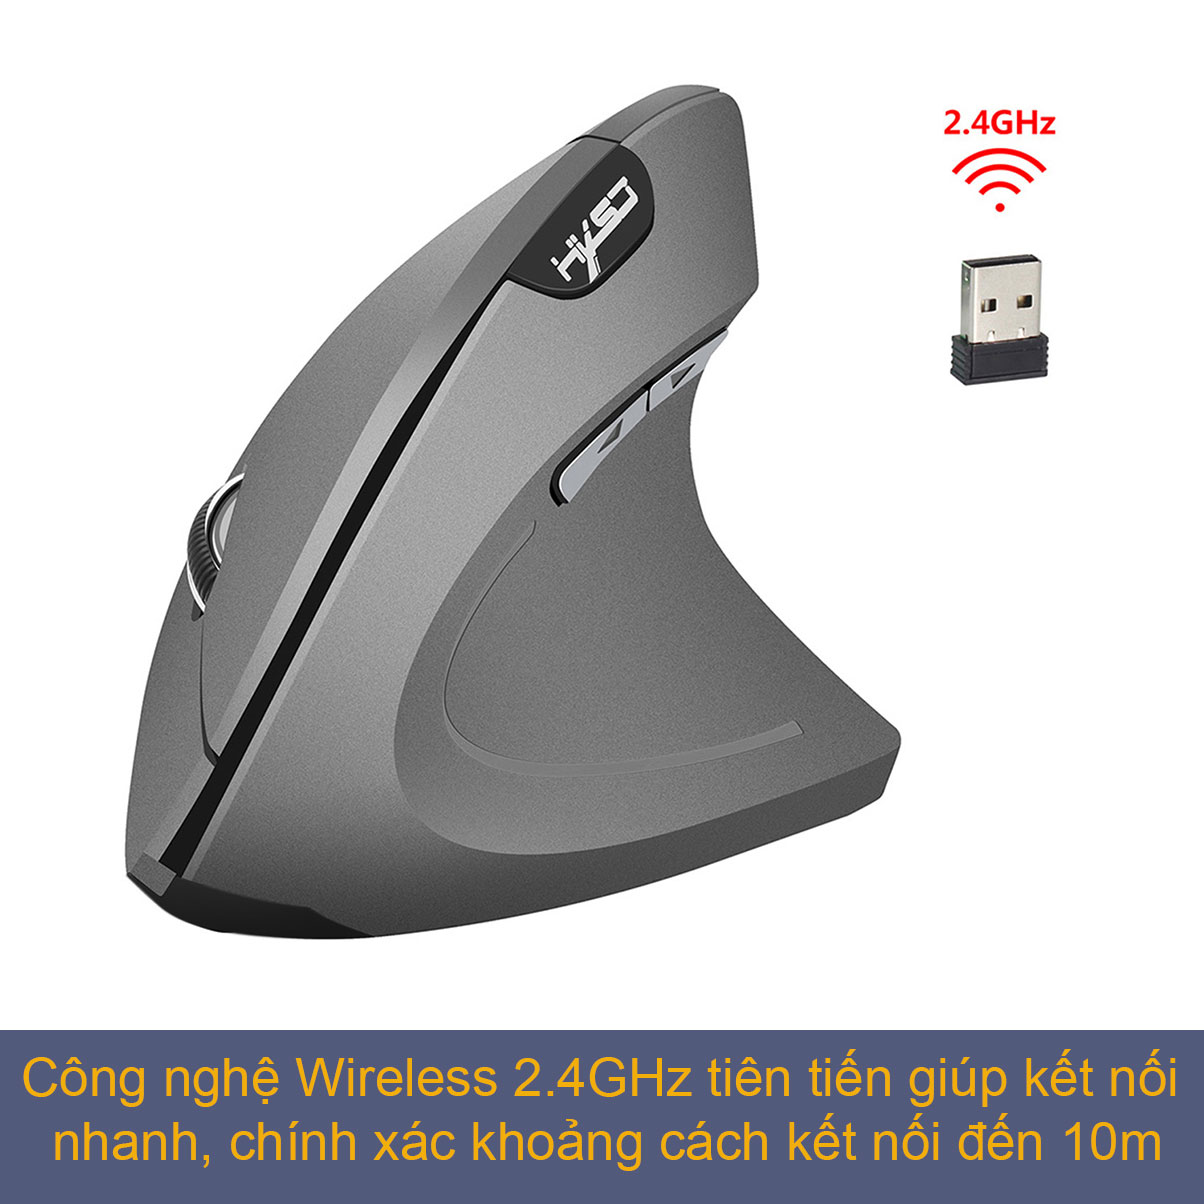 Chuột không dây kiểu đứng sạc pin HXSJ T22 wireless USB 2.4GHz chống mỏi tay chuyên dùng cho pc laptop macbook ipad tivi - Hàng chính hãng